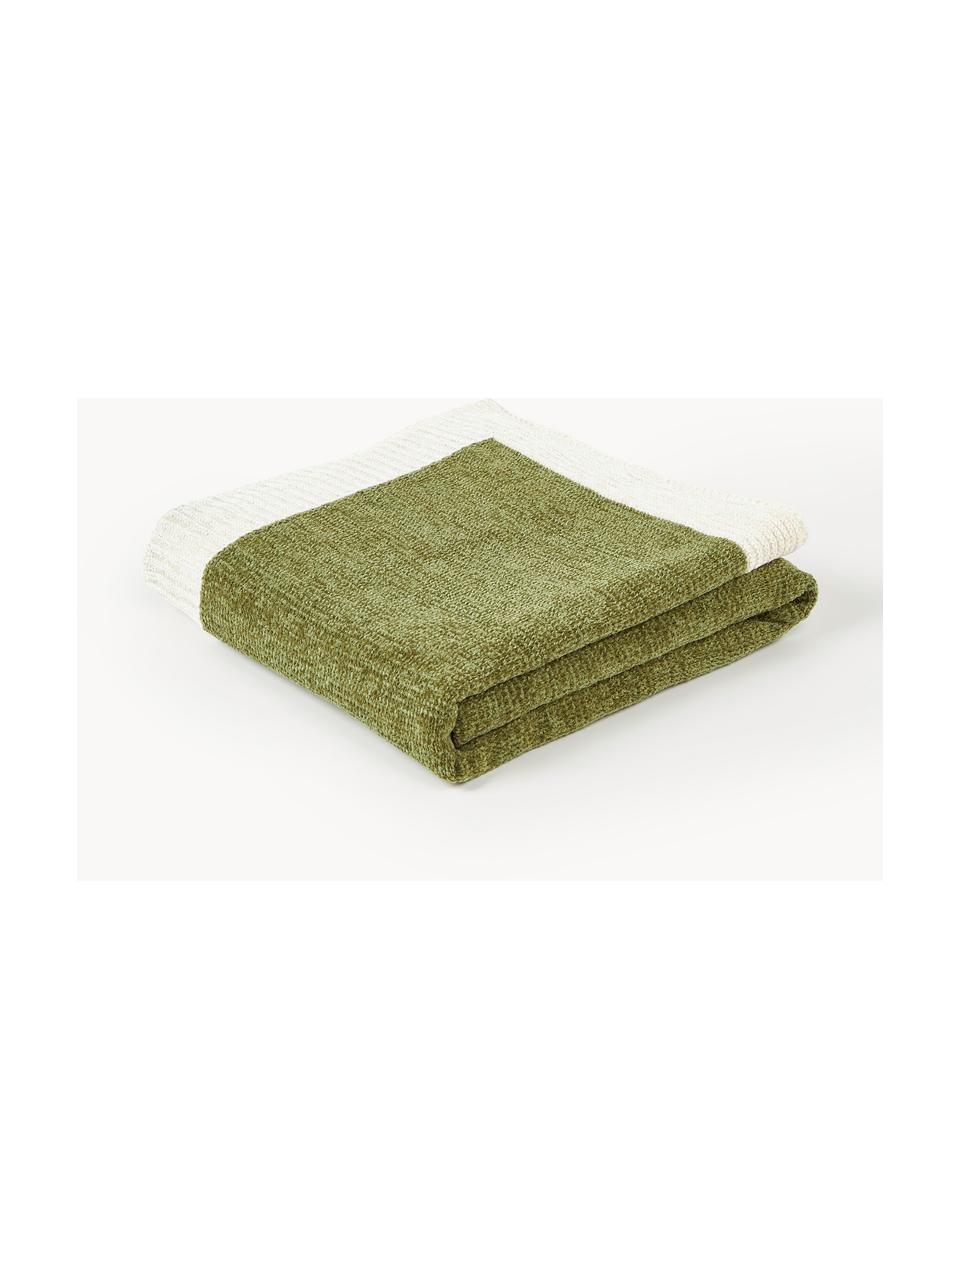 Koc szenilowy Demi, 100% bawełna, Oliwkowy zielony, kremowobiały, S 130 x D 170 cm